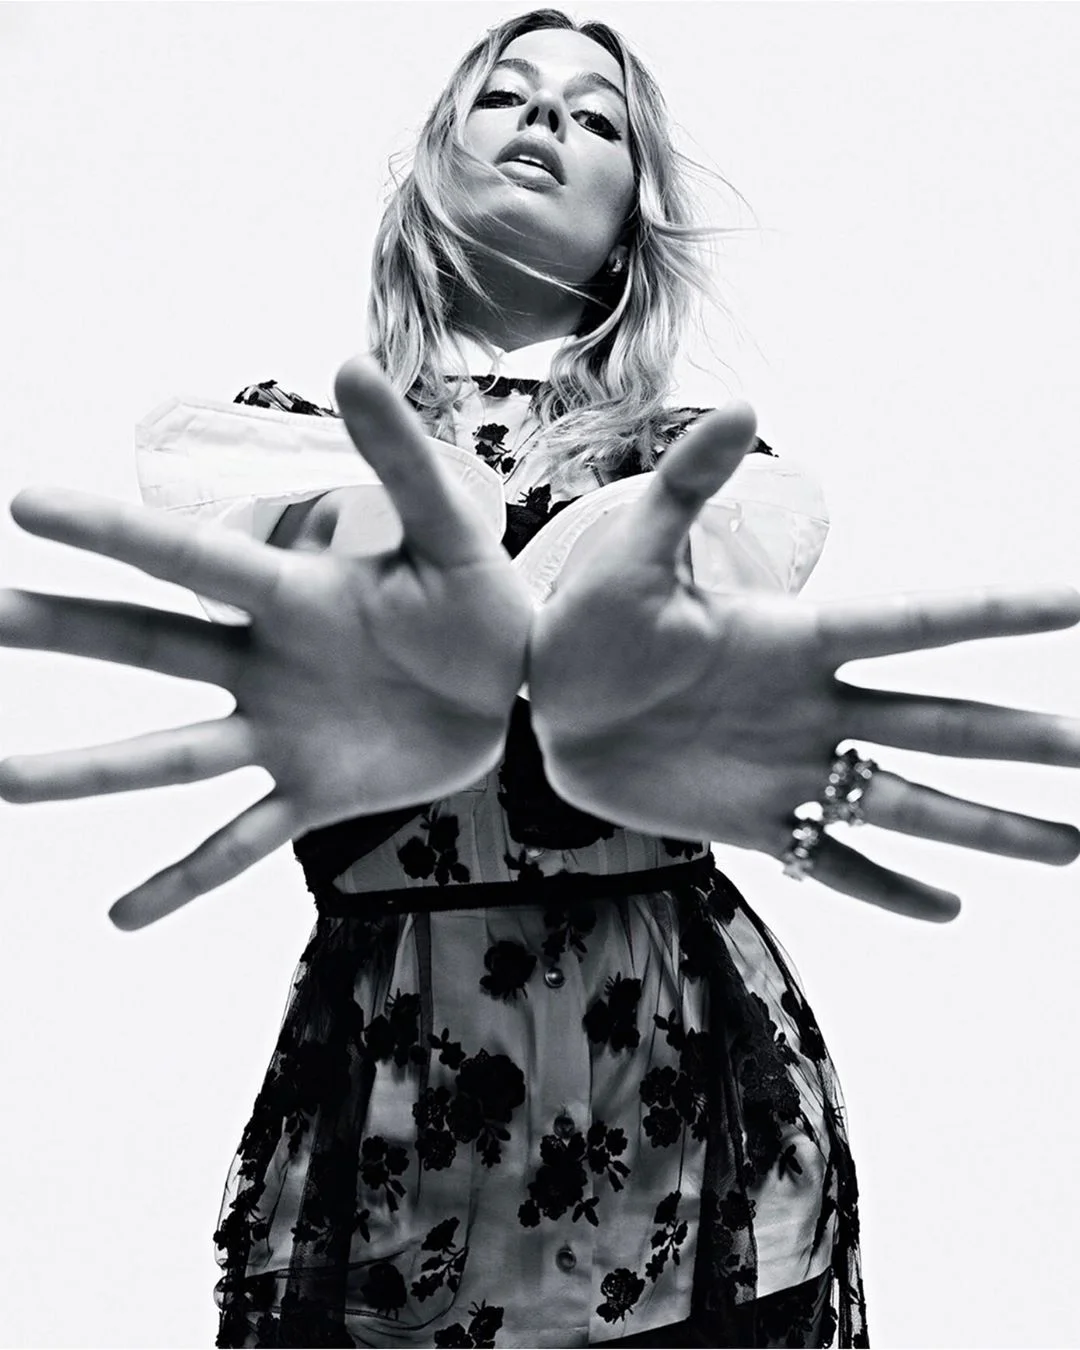 Марго Робби украсила обложку Vogue, но фанов напугал ее худощавый вид - фото 446827